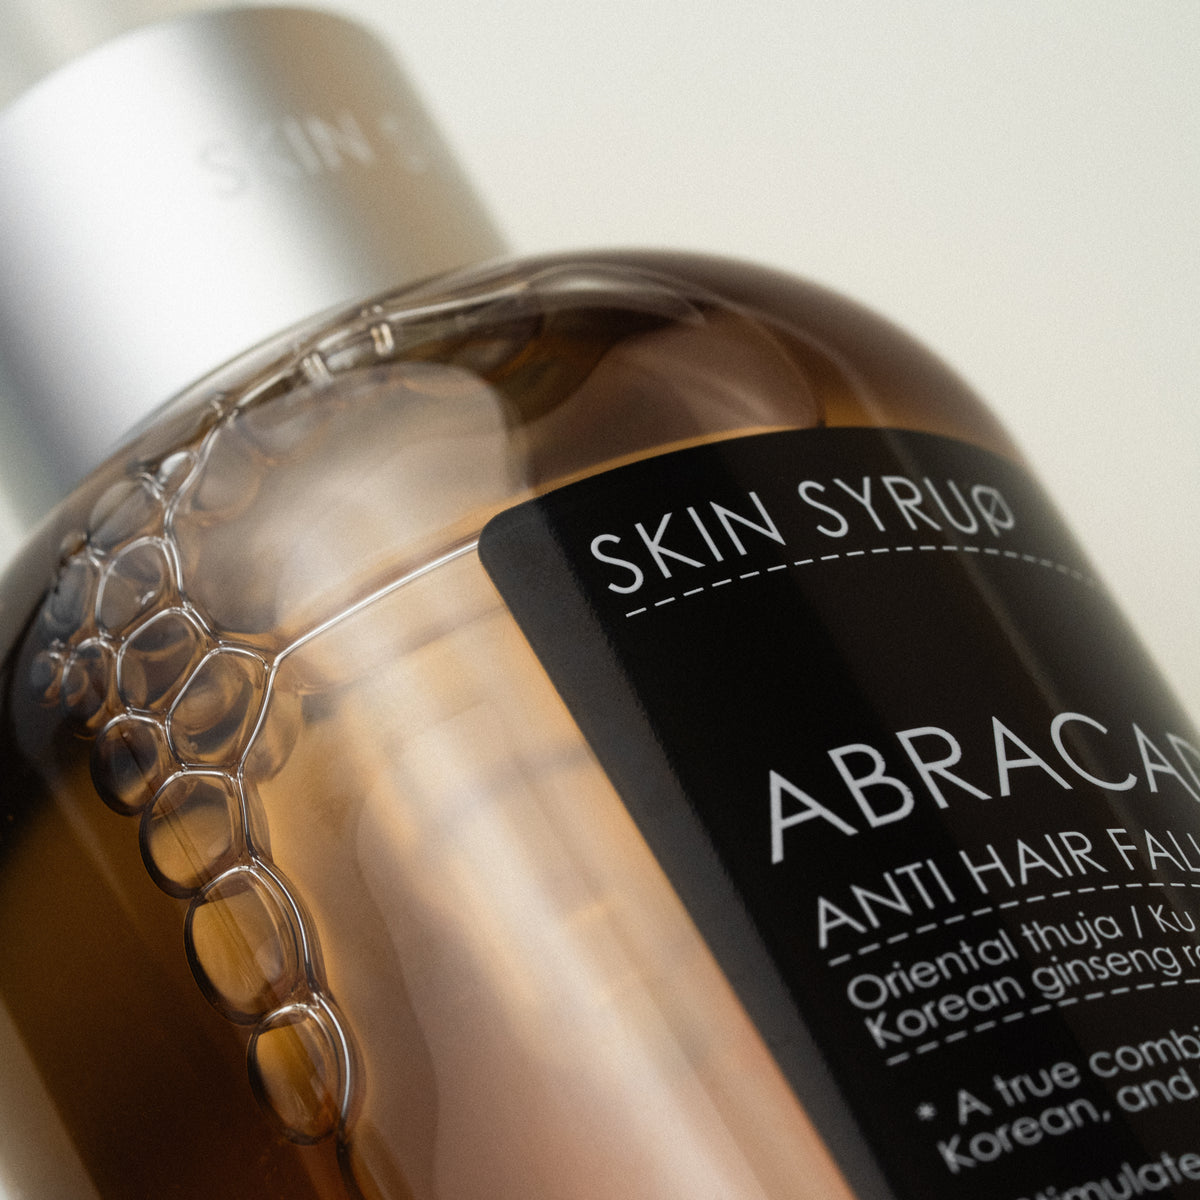 Abracadabra anti-hair fall shampoo